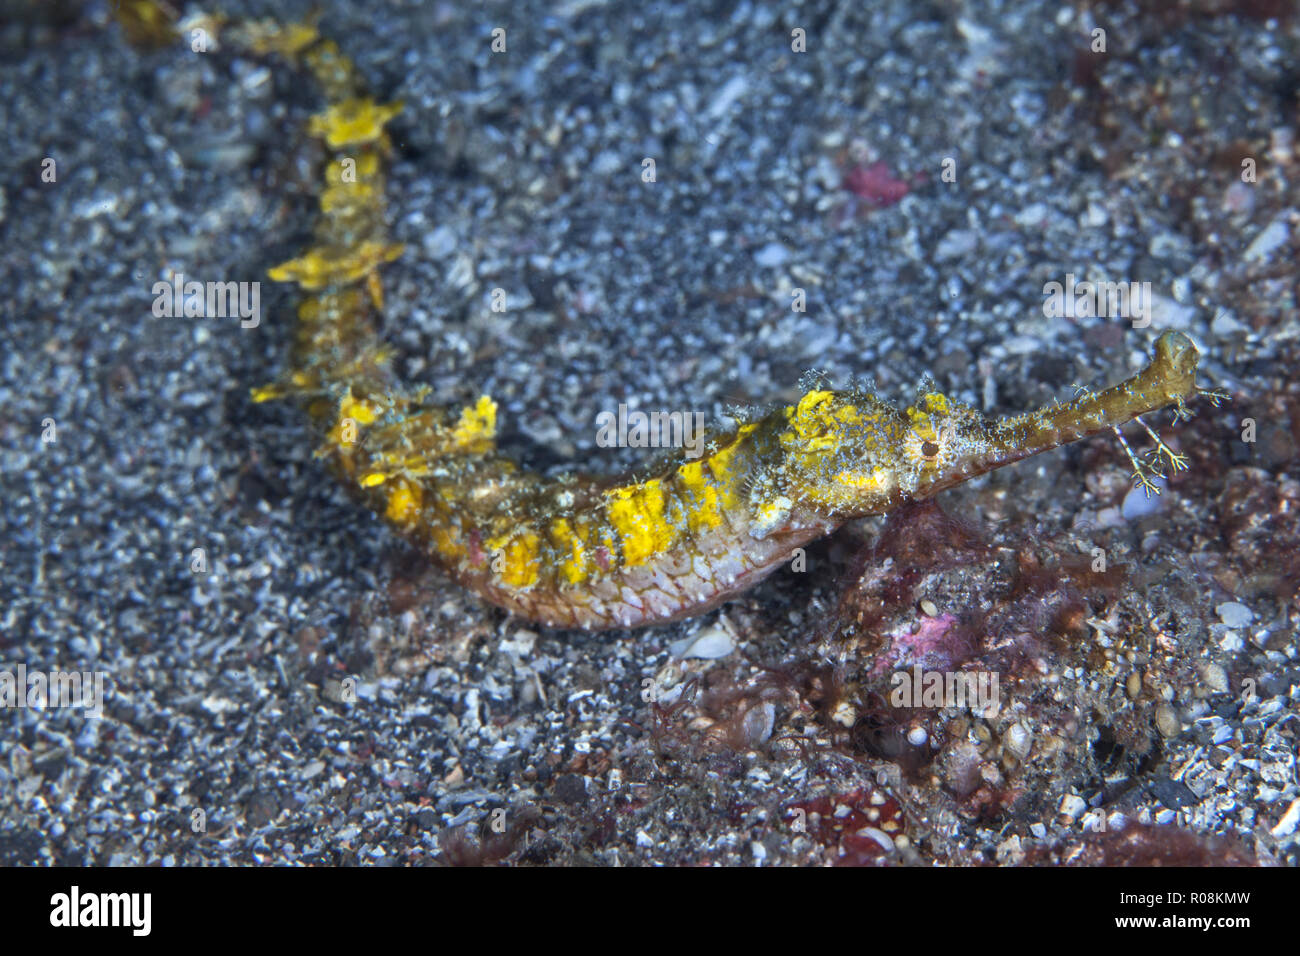 Agujas de mar alado [Halicampus macrorhynchus] no se puede nadar, repta por el fondo marino del estrecho de Lembeh, Indonesia. Foto de stock